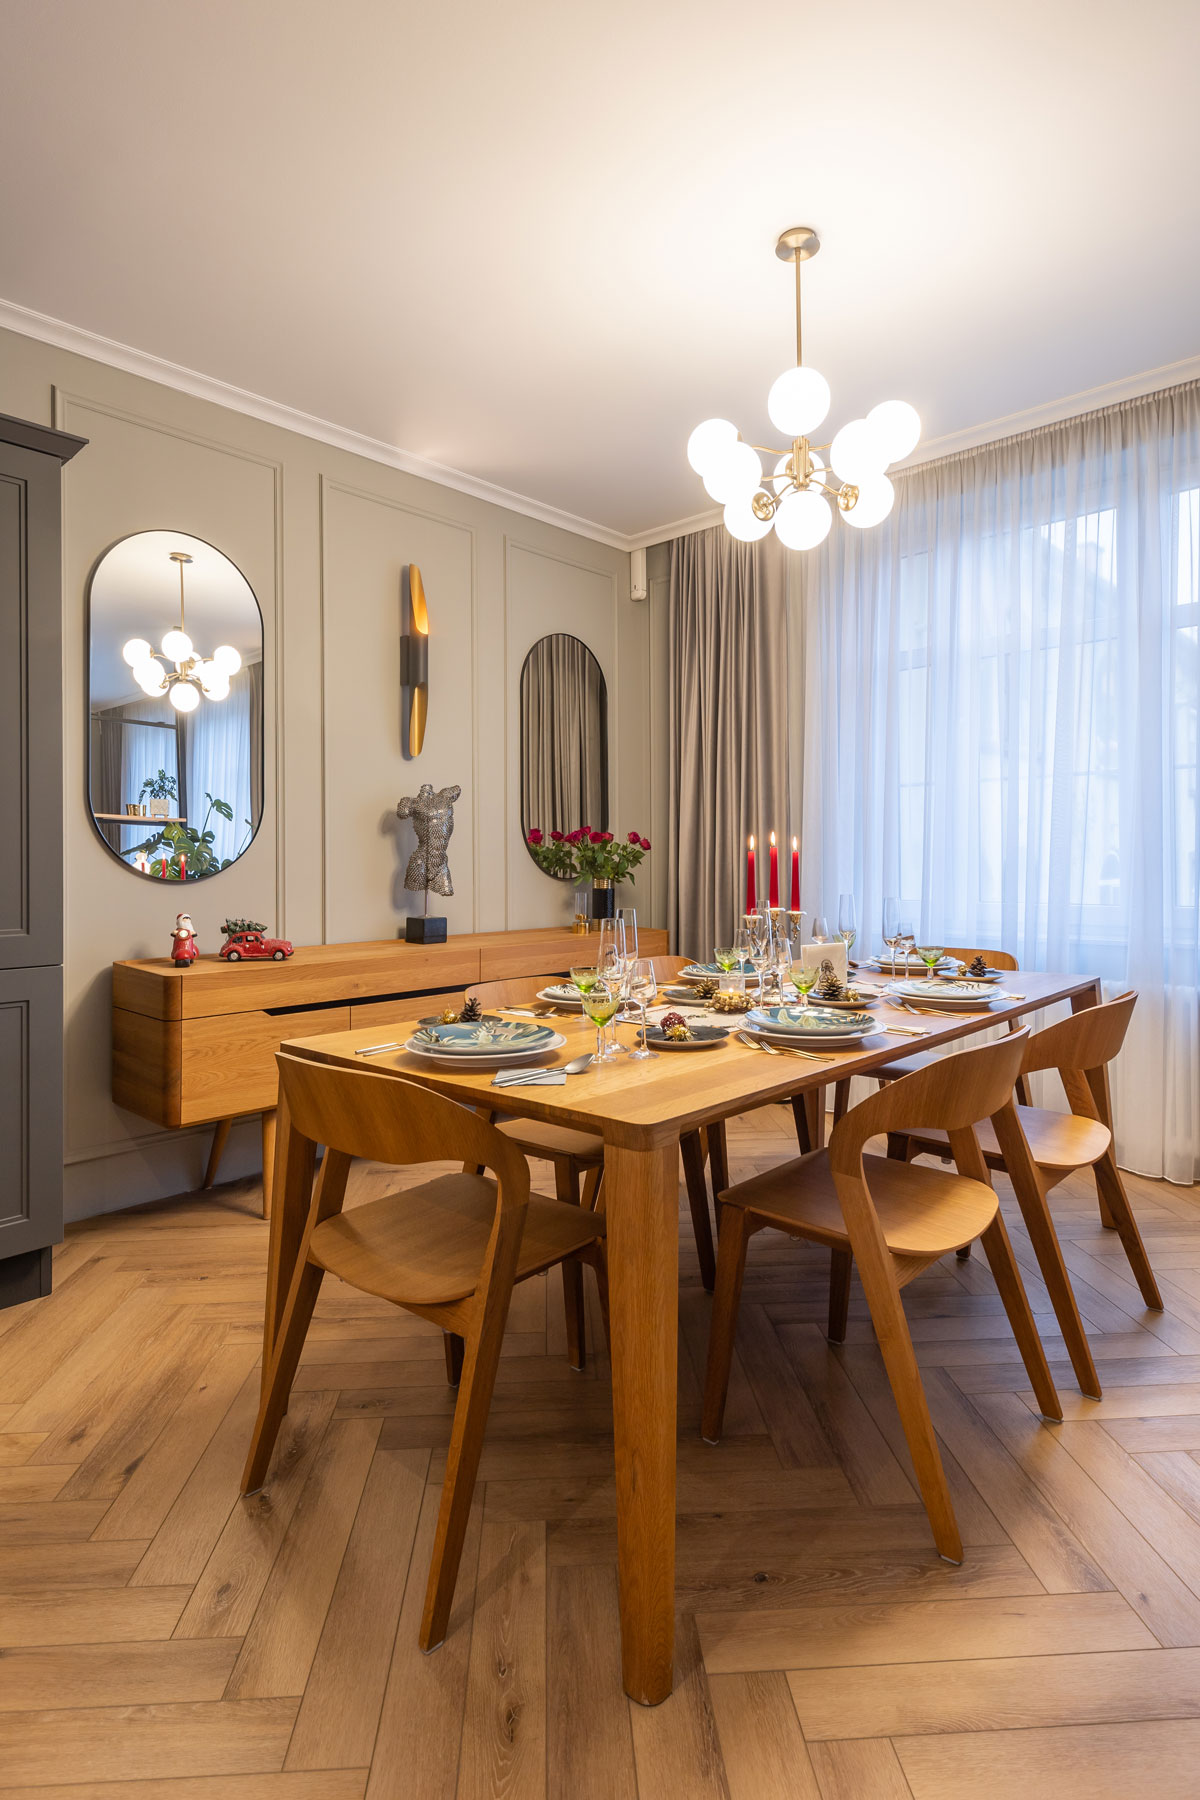 jedálenský stôl s retro štýle s dizajnovými stoličkami, prestretý sviatočne, nad stolom svieti zlatý retro luster, za stolom je pri stene retro komoda, steny zdobia lišty a oválne zrkadlá